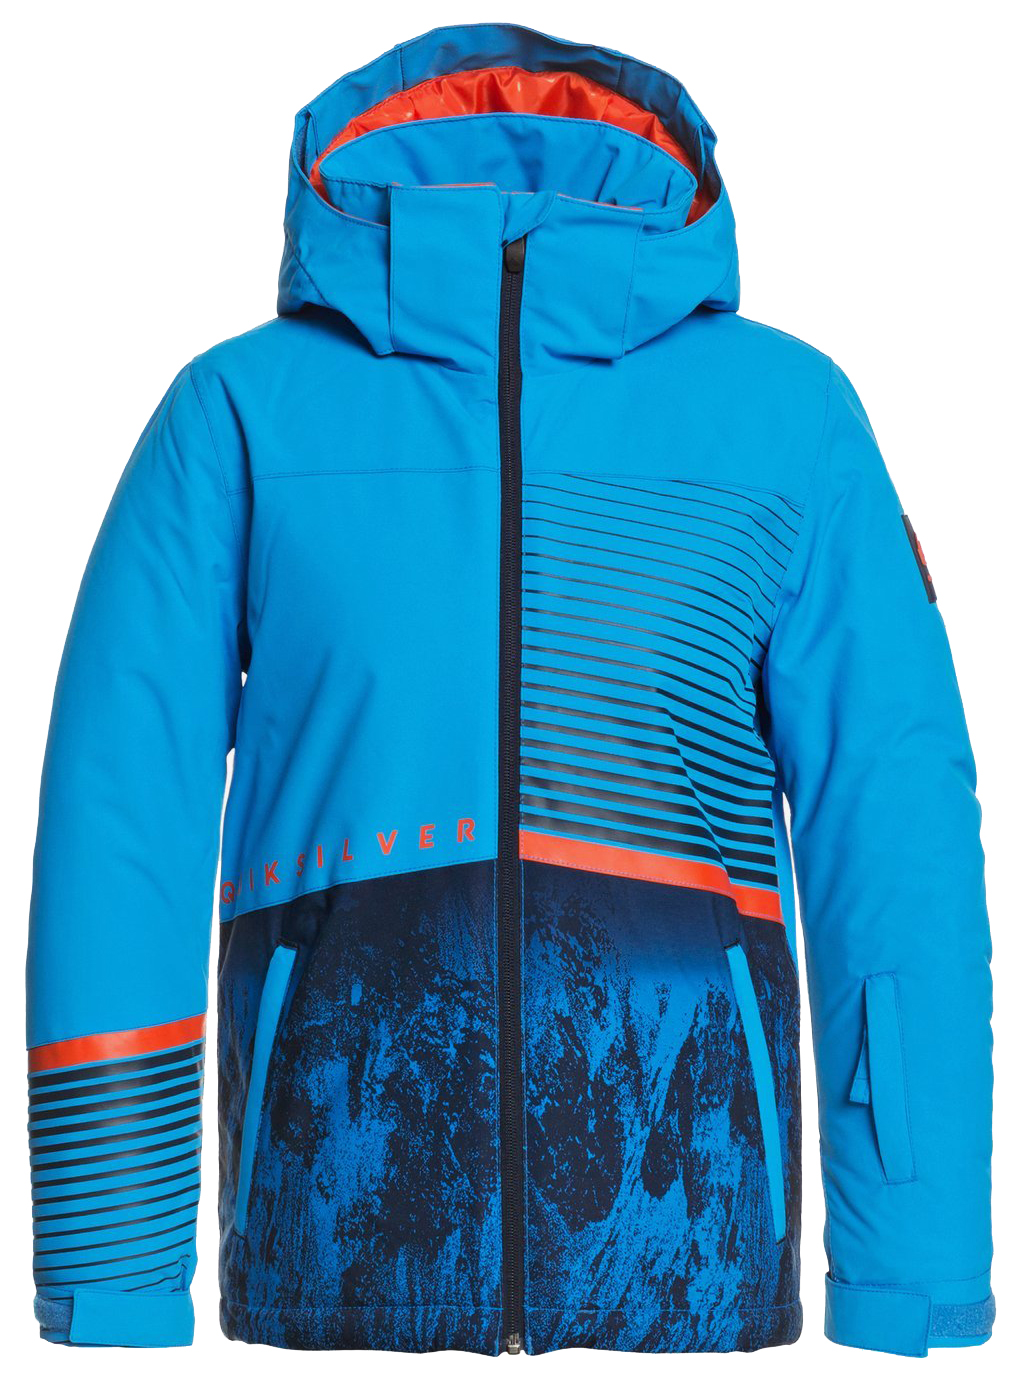 Куртка сноубордическая детская Quiksilver 2020-21 Silvertip Brilliant blue parafinum